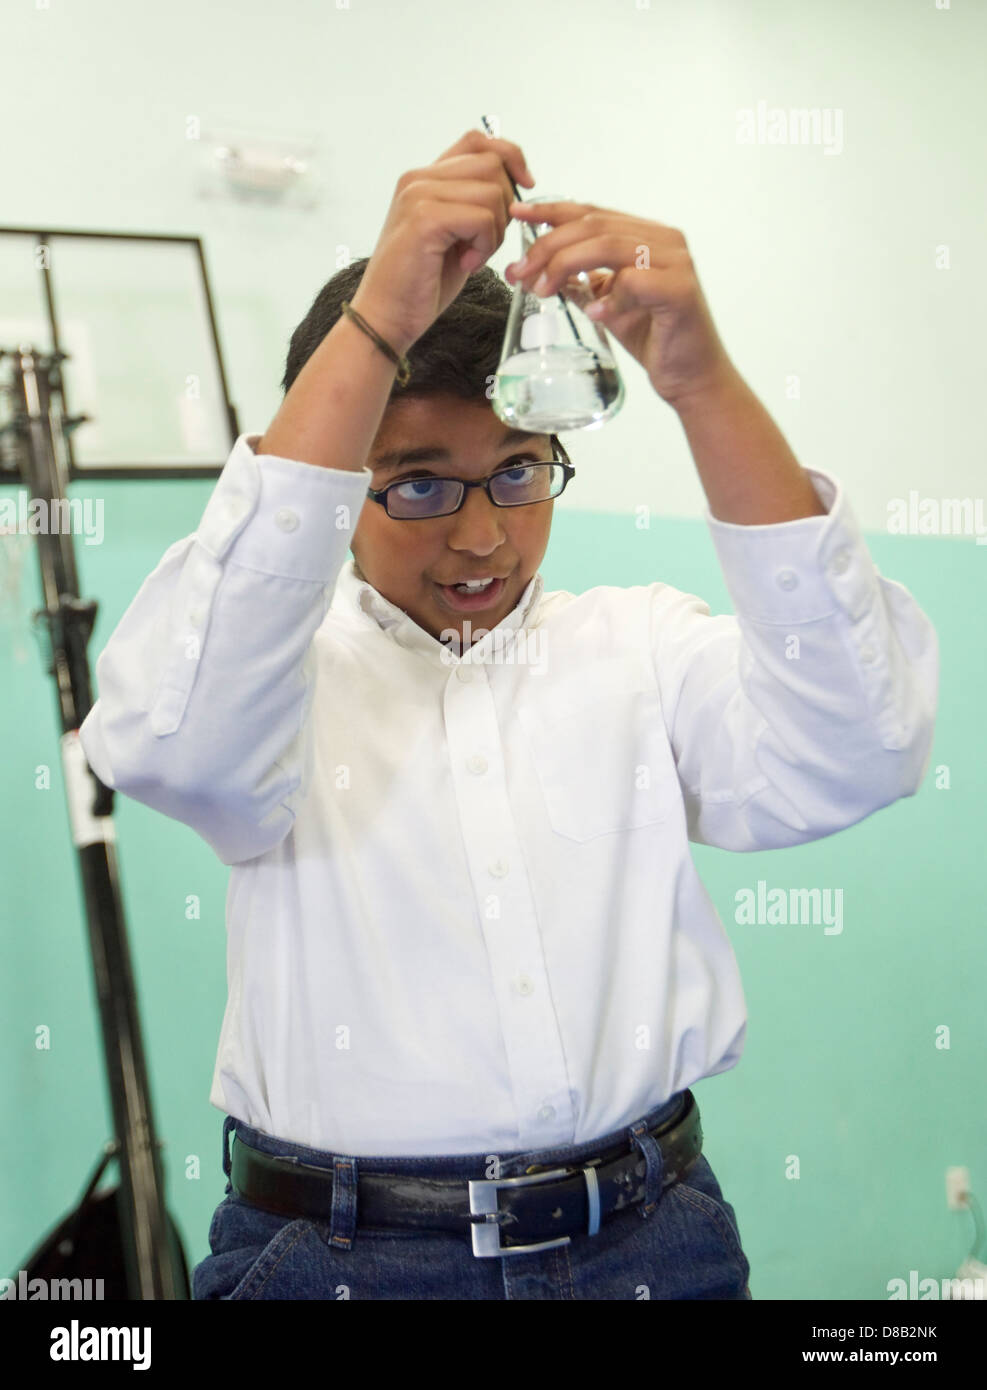 Homme high school student of middle eastern décents, utilise la science au cours de bécher démonstration juste Banque D'Images